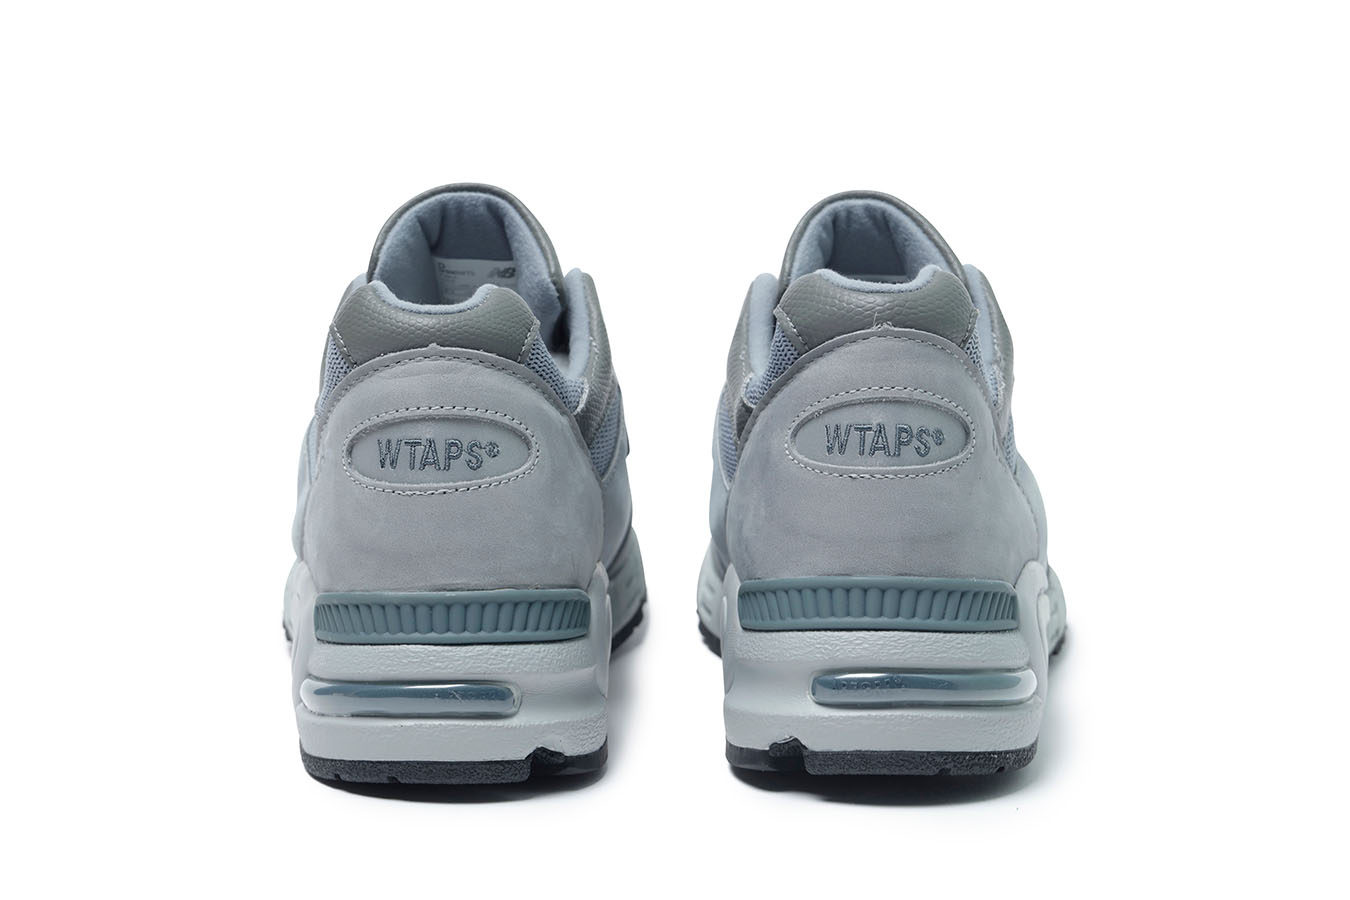 Wtaps new balance 990 v2 スニーカー 靴 メンズ セール 激安